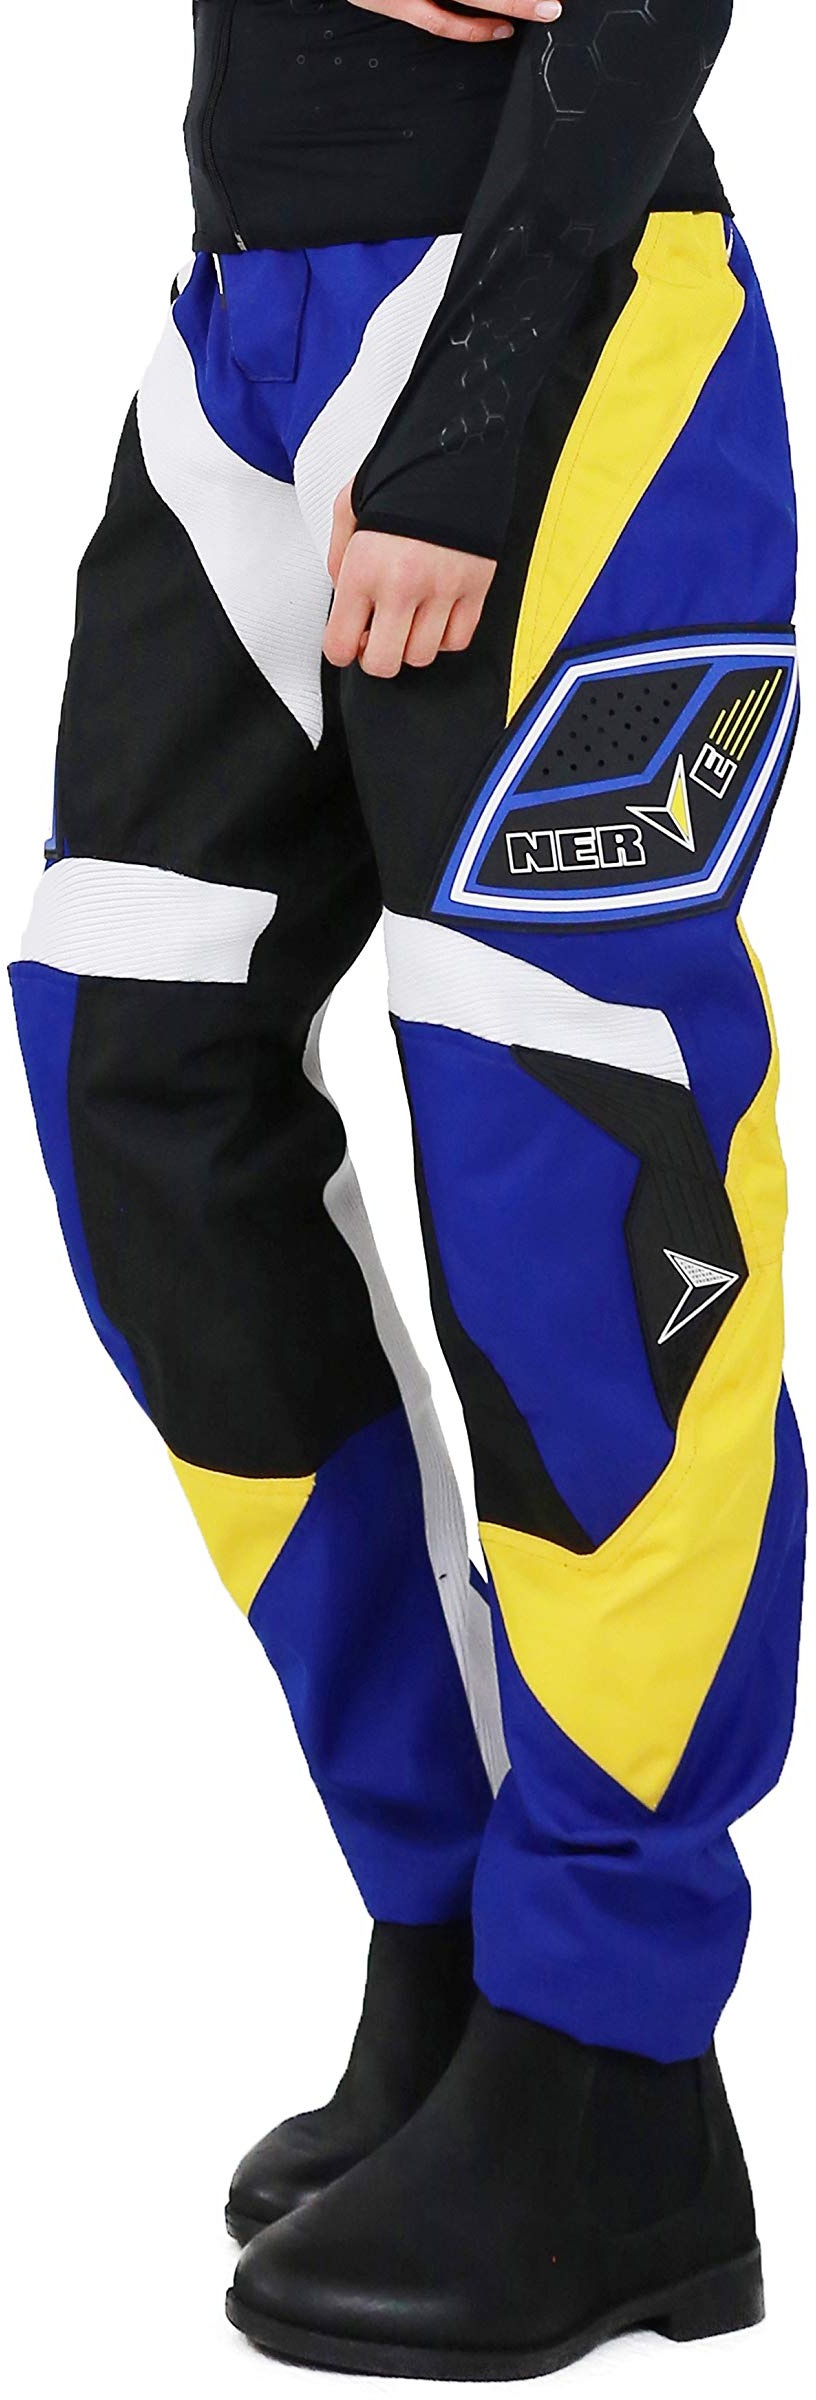 Nerve Shop Motocross Enduro Offroad Quad Cross Hose Herren Damen - schwarz-blau - L